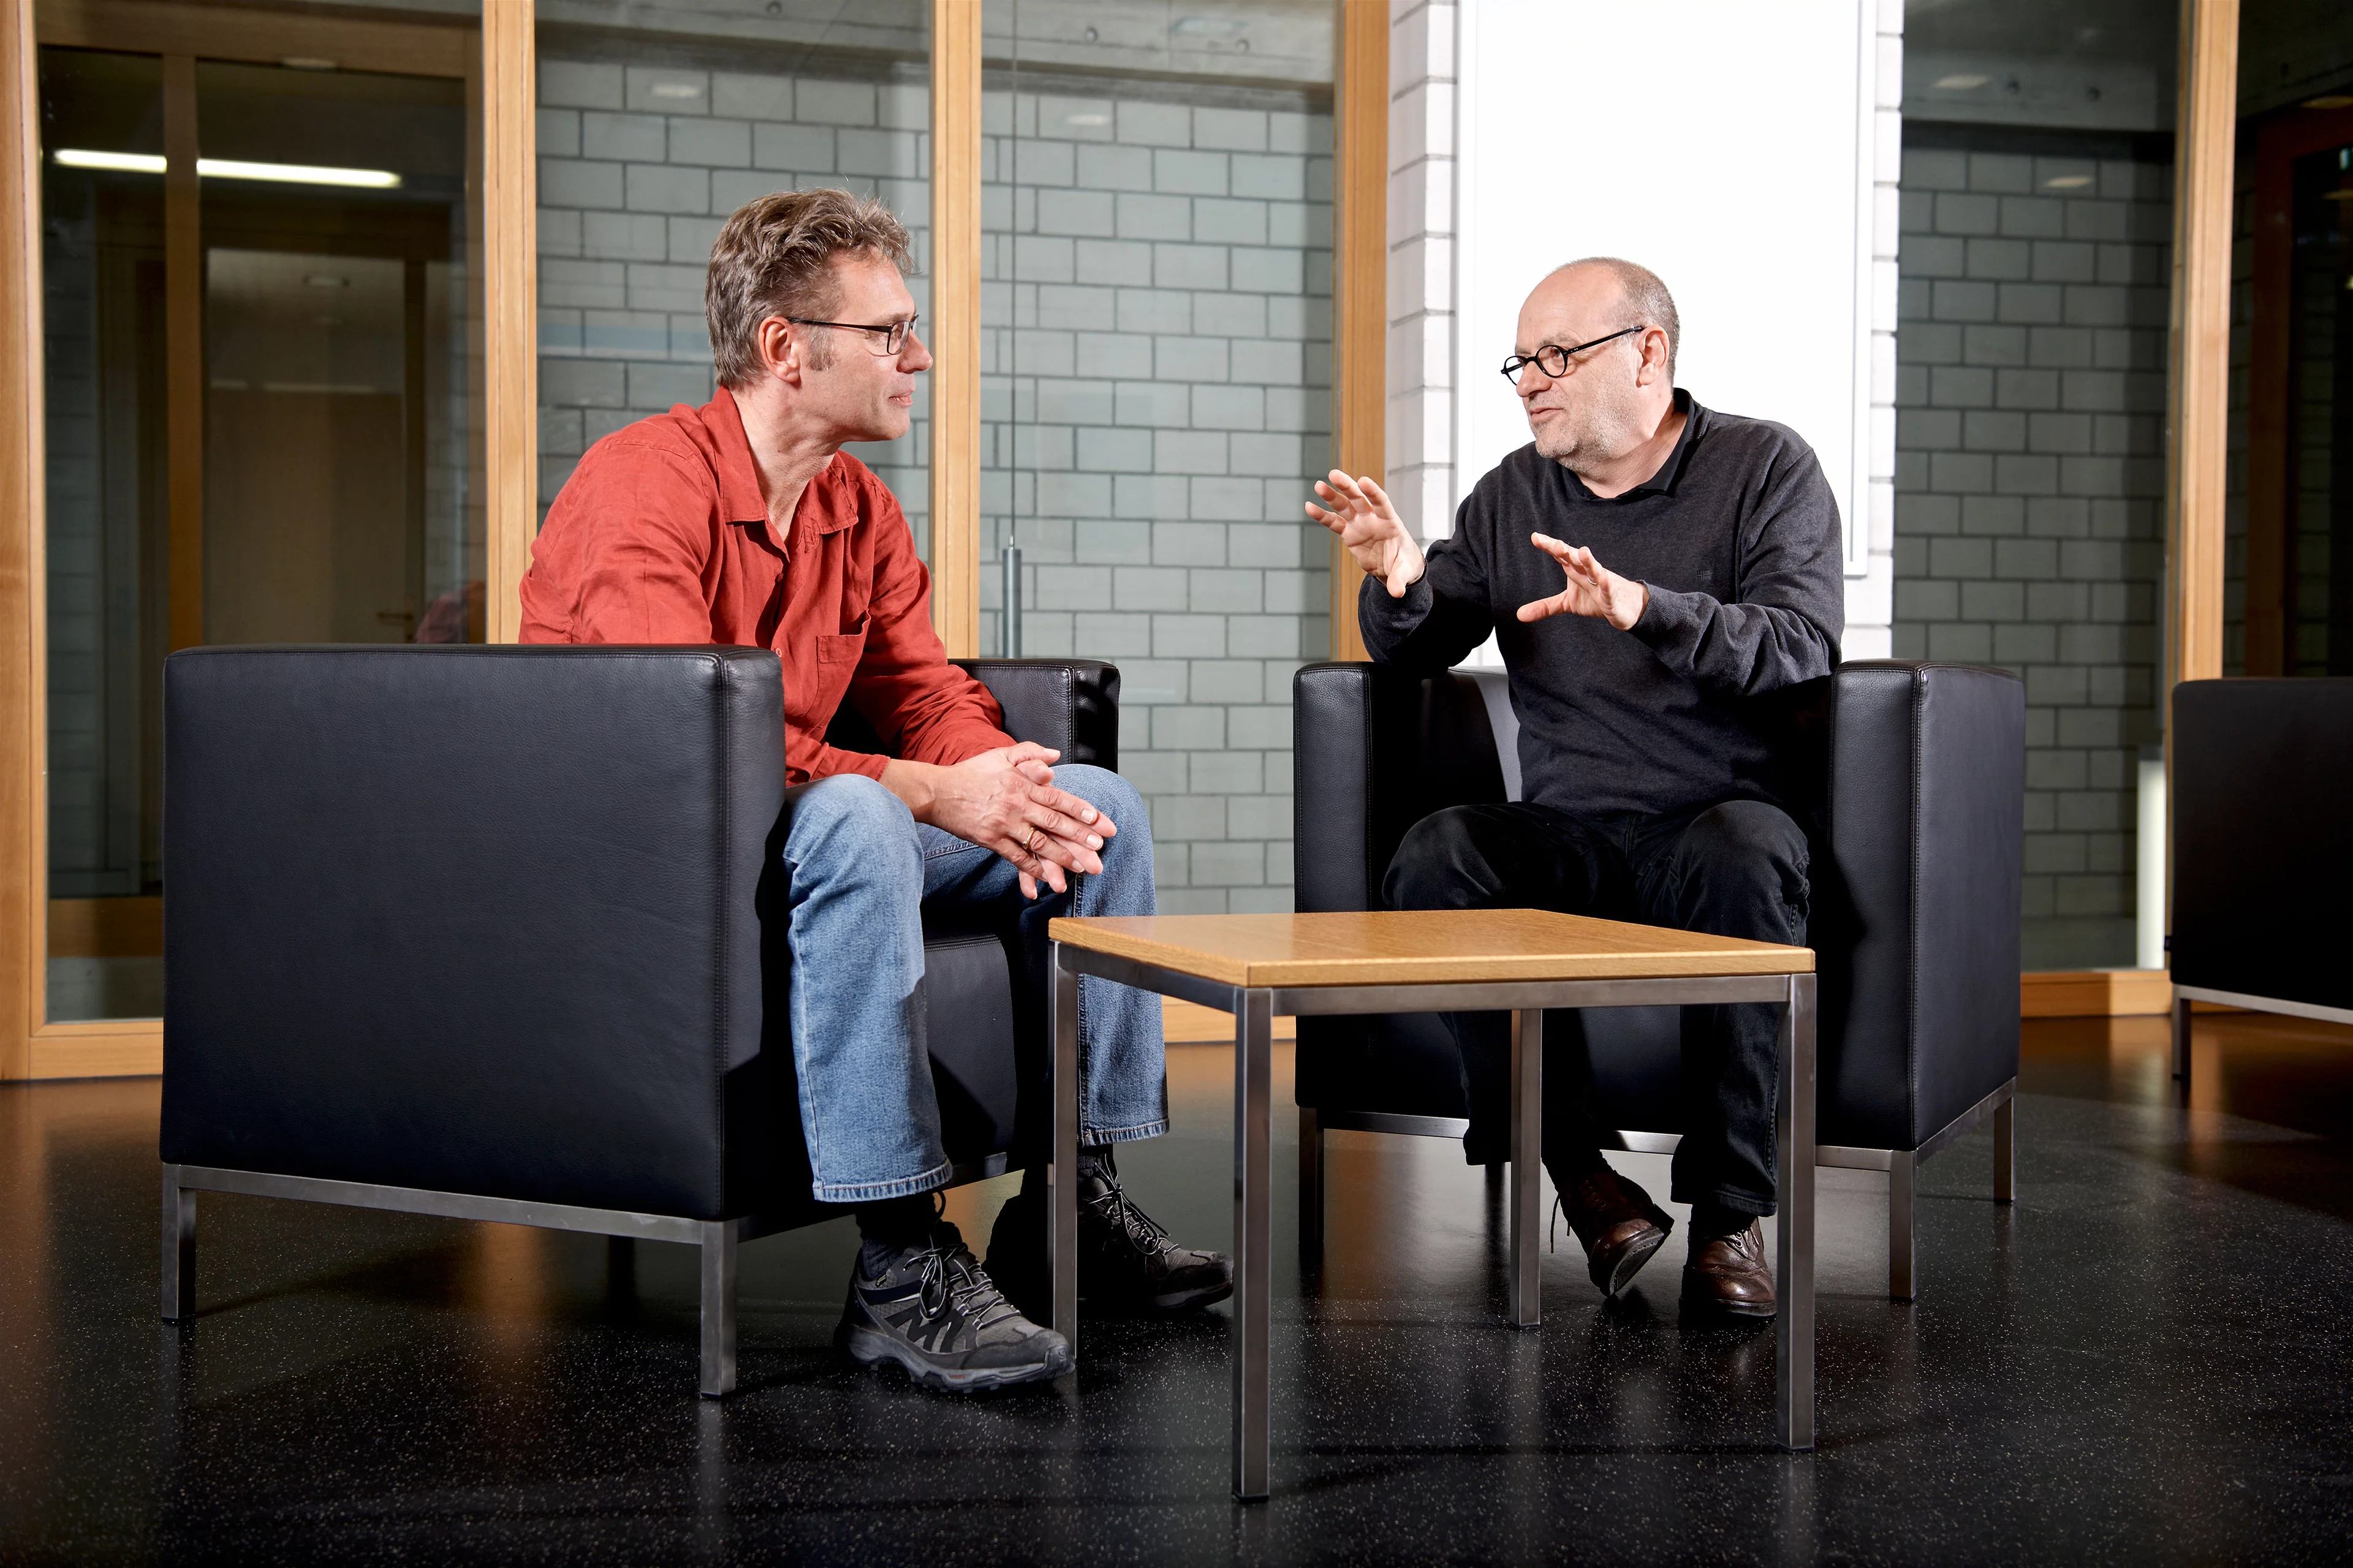 Entretien avec deux chercheurs spécialisés dans le domaine des muons: Thomas Prokscha et son supérieur Alex Amato (à droite). (Photo: Institut Paul Scherrer/Markus Fischer)